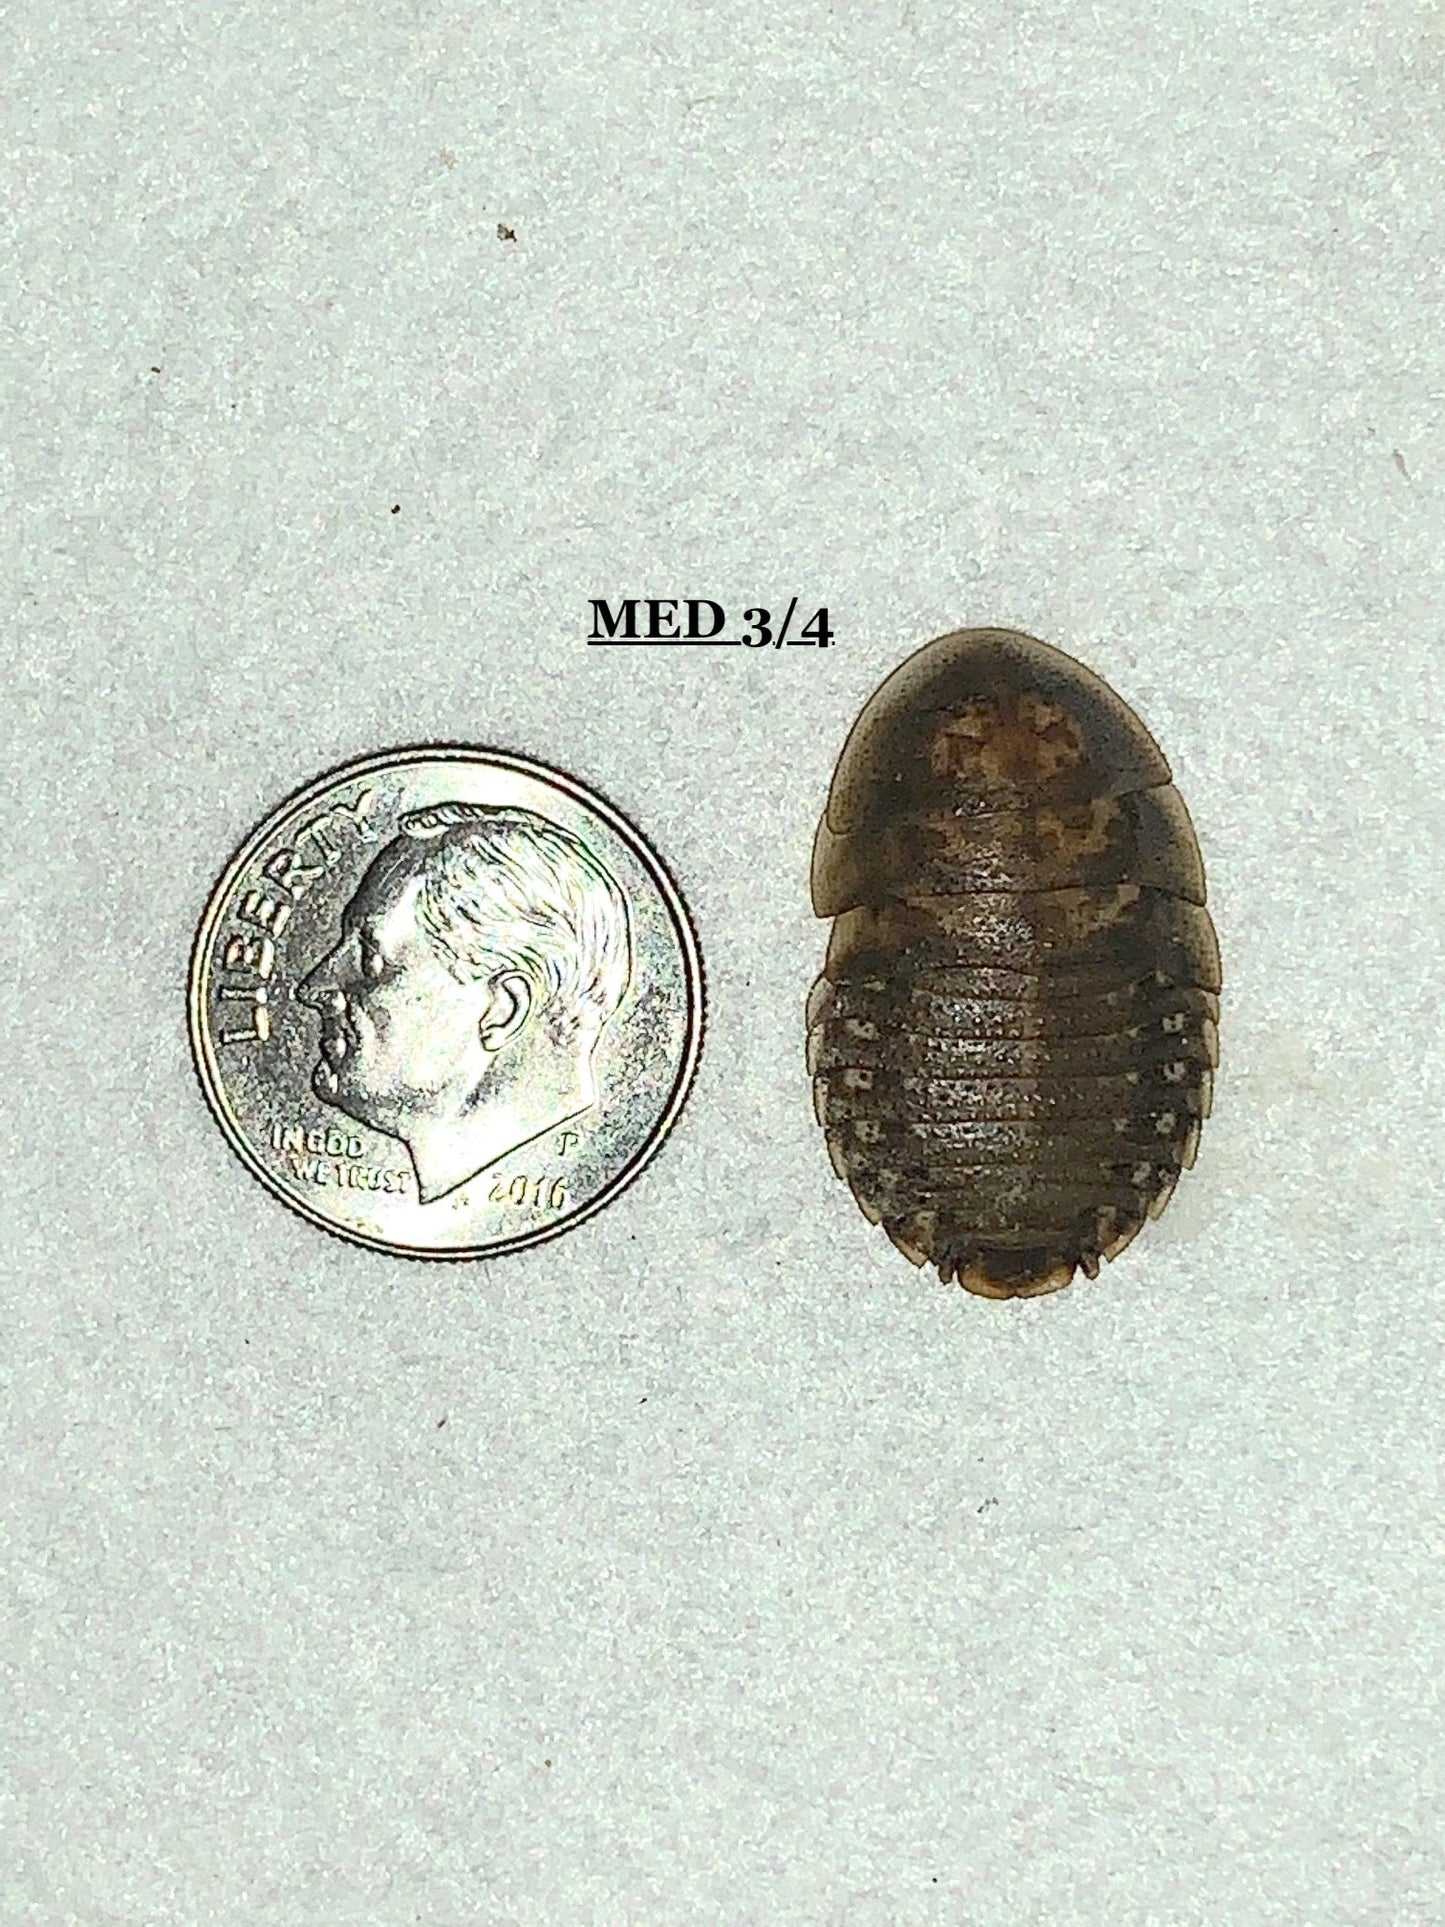 Dubia Roach Feeders 5000 Medium 3/4 inch